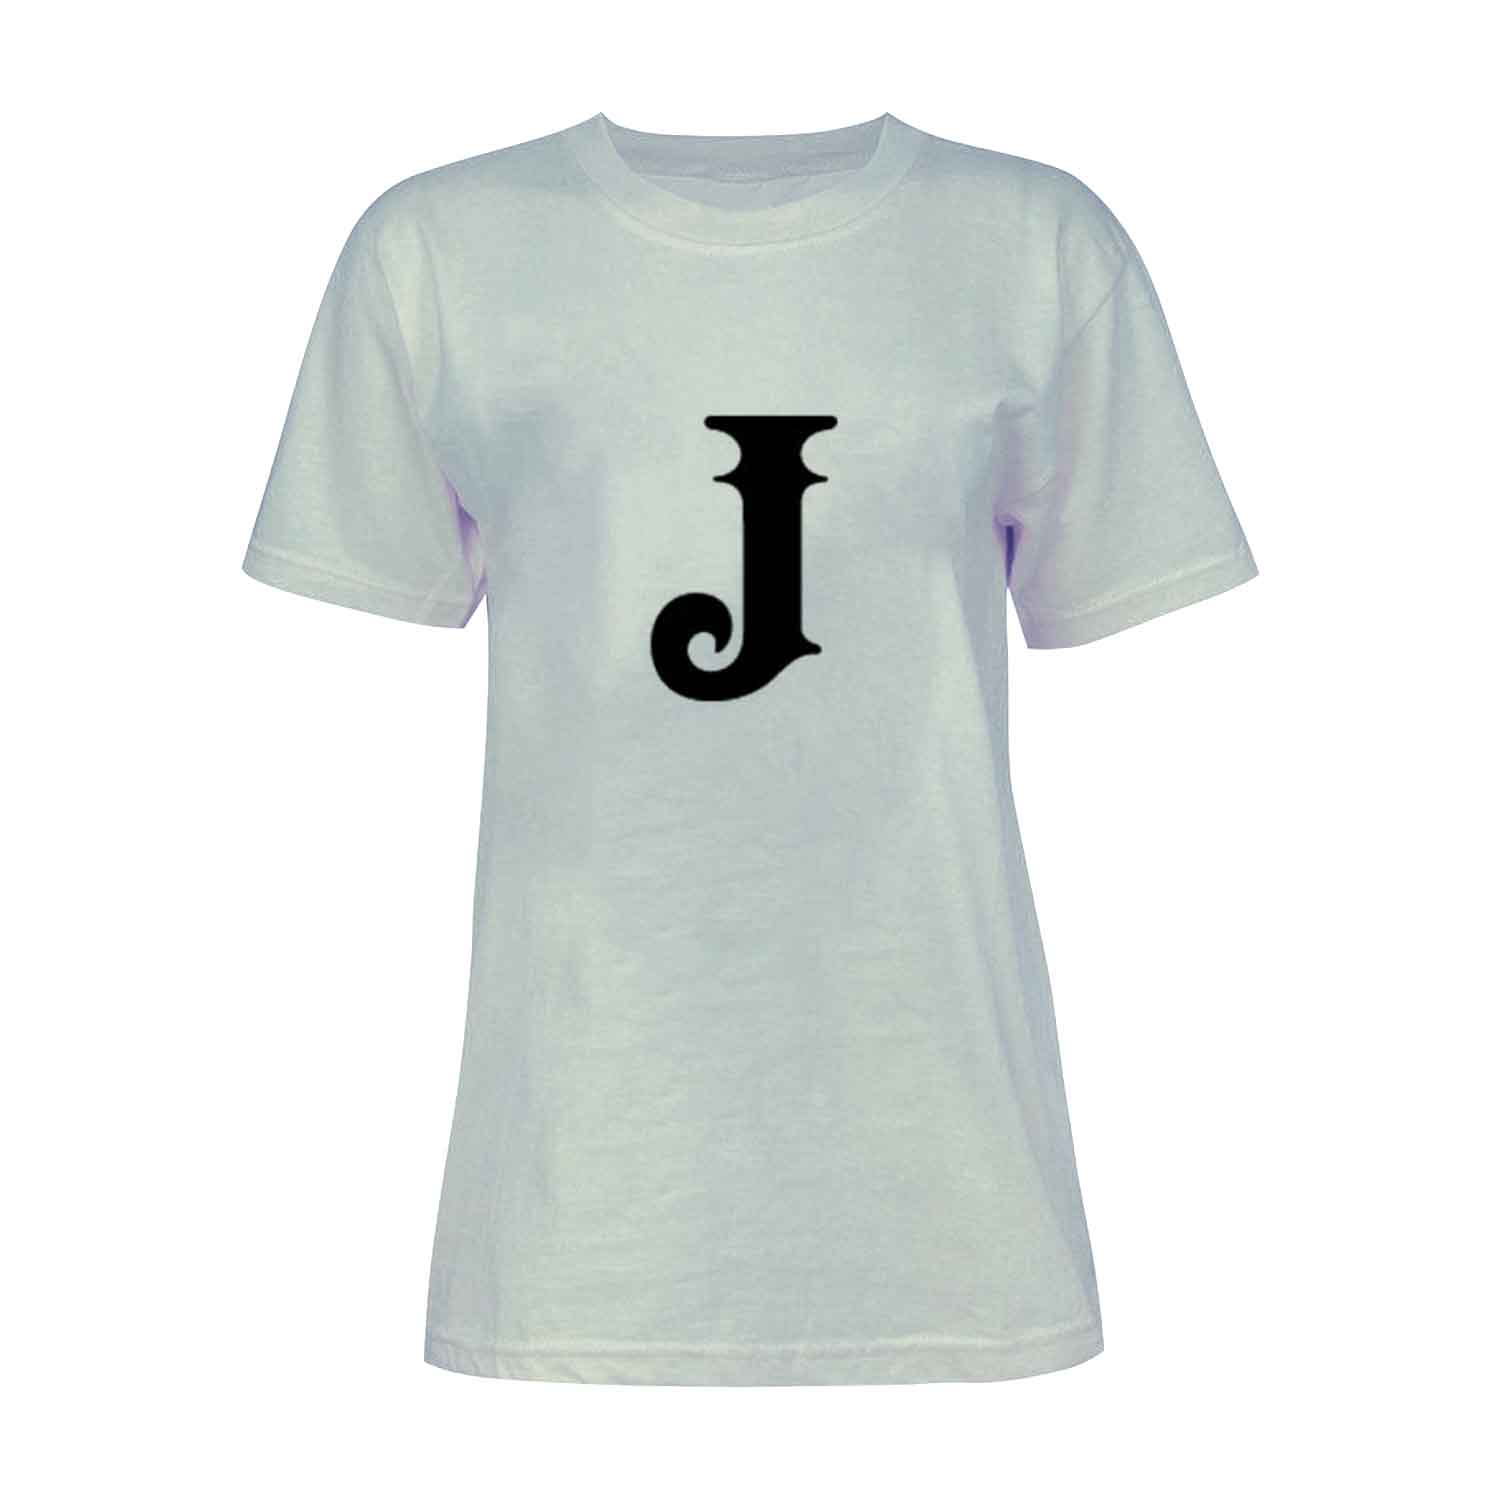 تی شرت آستین کوتاه زنانه مدل حرف J کد L228 رنگ طوسی